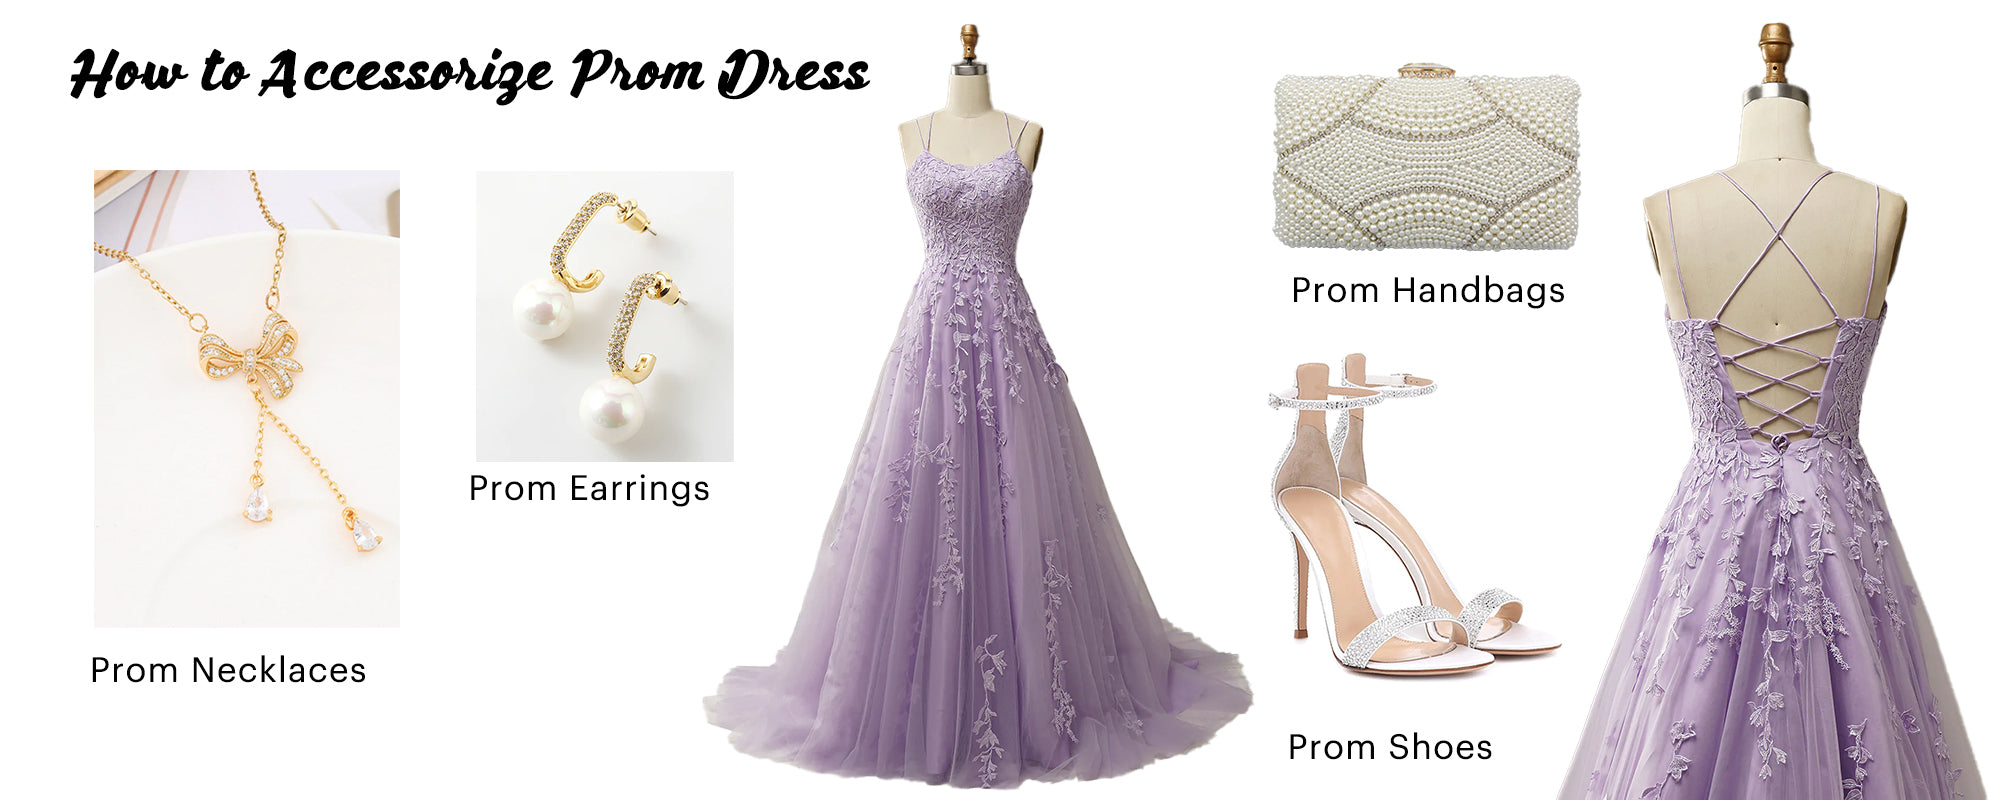 Prom Dress Accessories